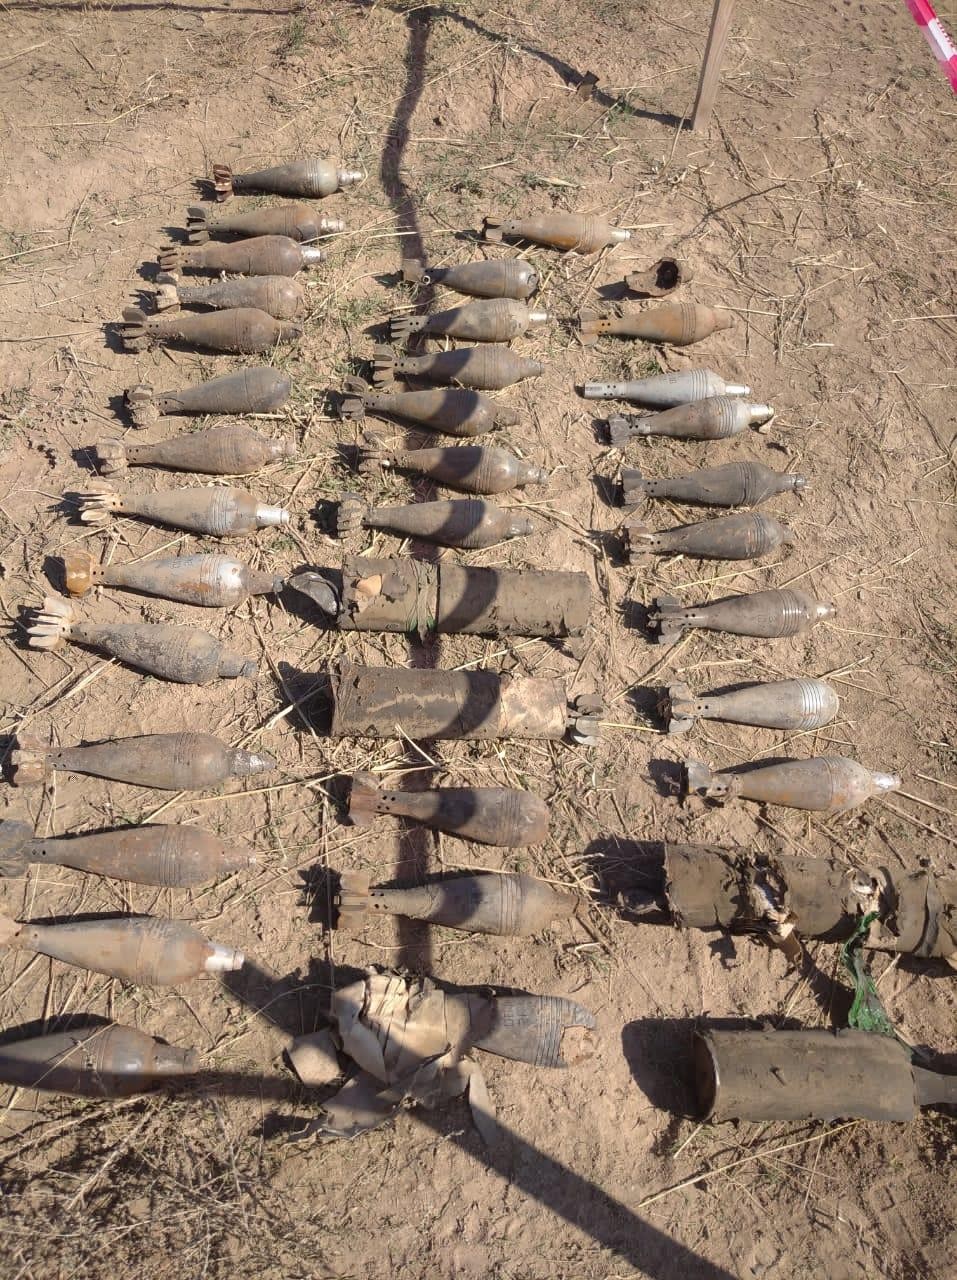 Cəbhəboyu ərazilərdə 175 partlamamış hərbi sursat və 2 dron aşkarlandı - FOTOLAR